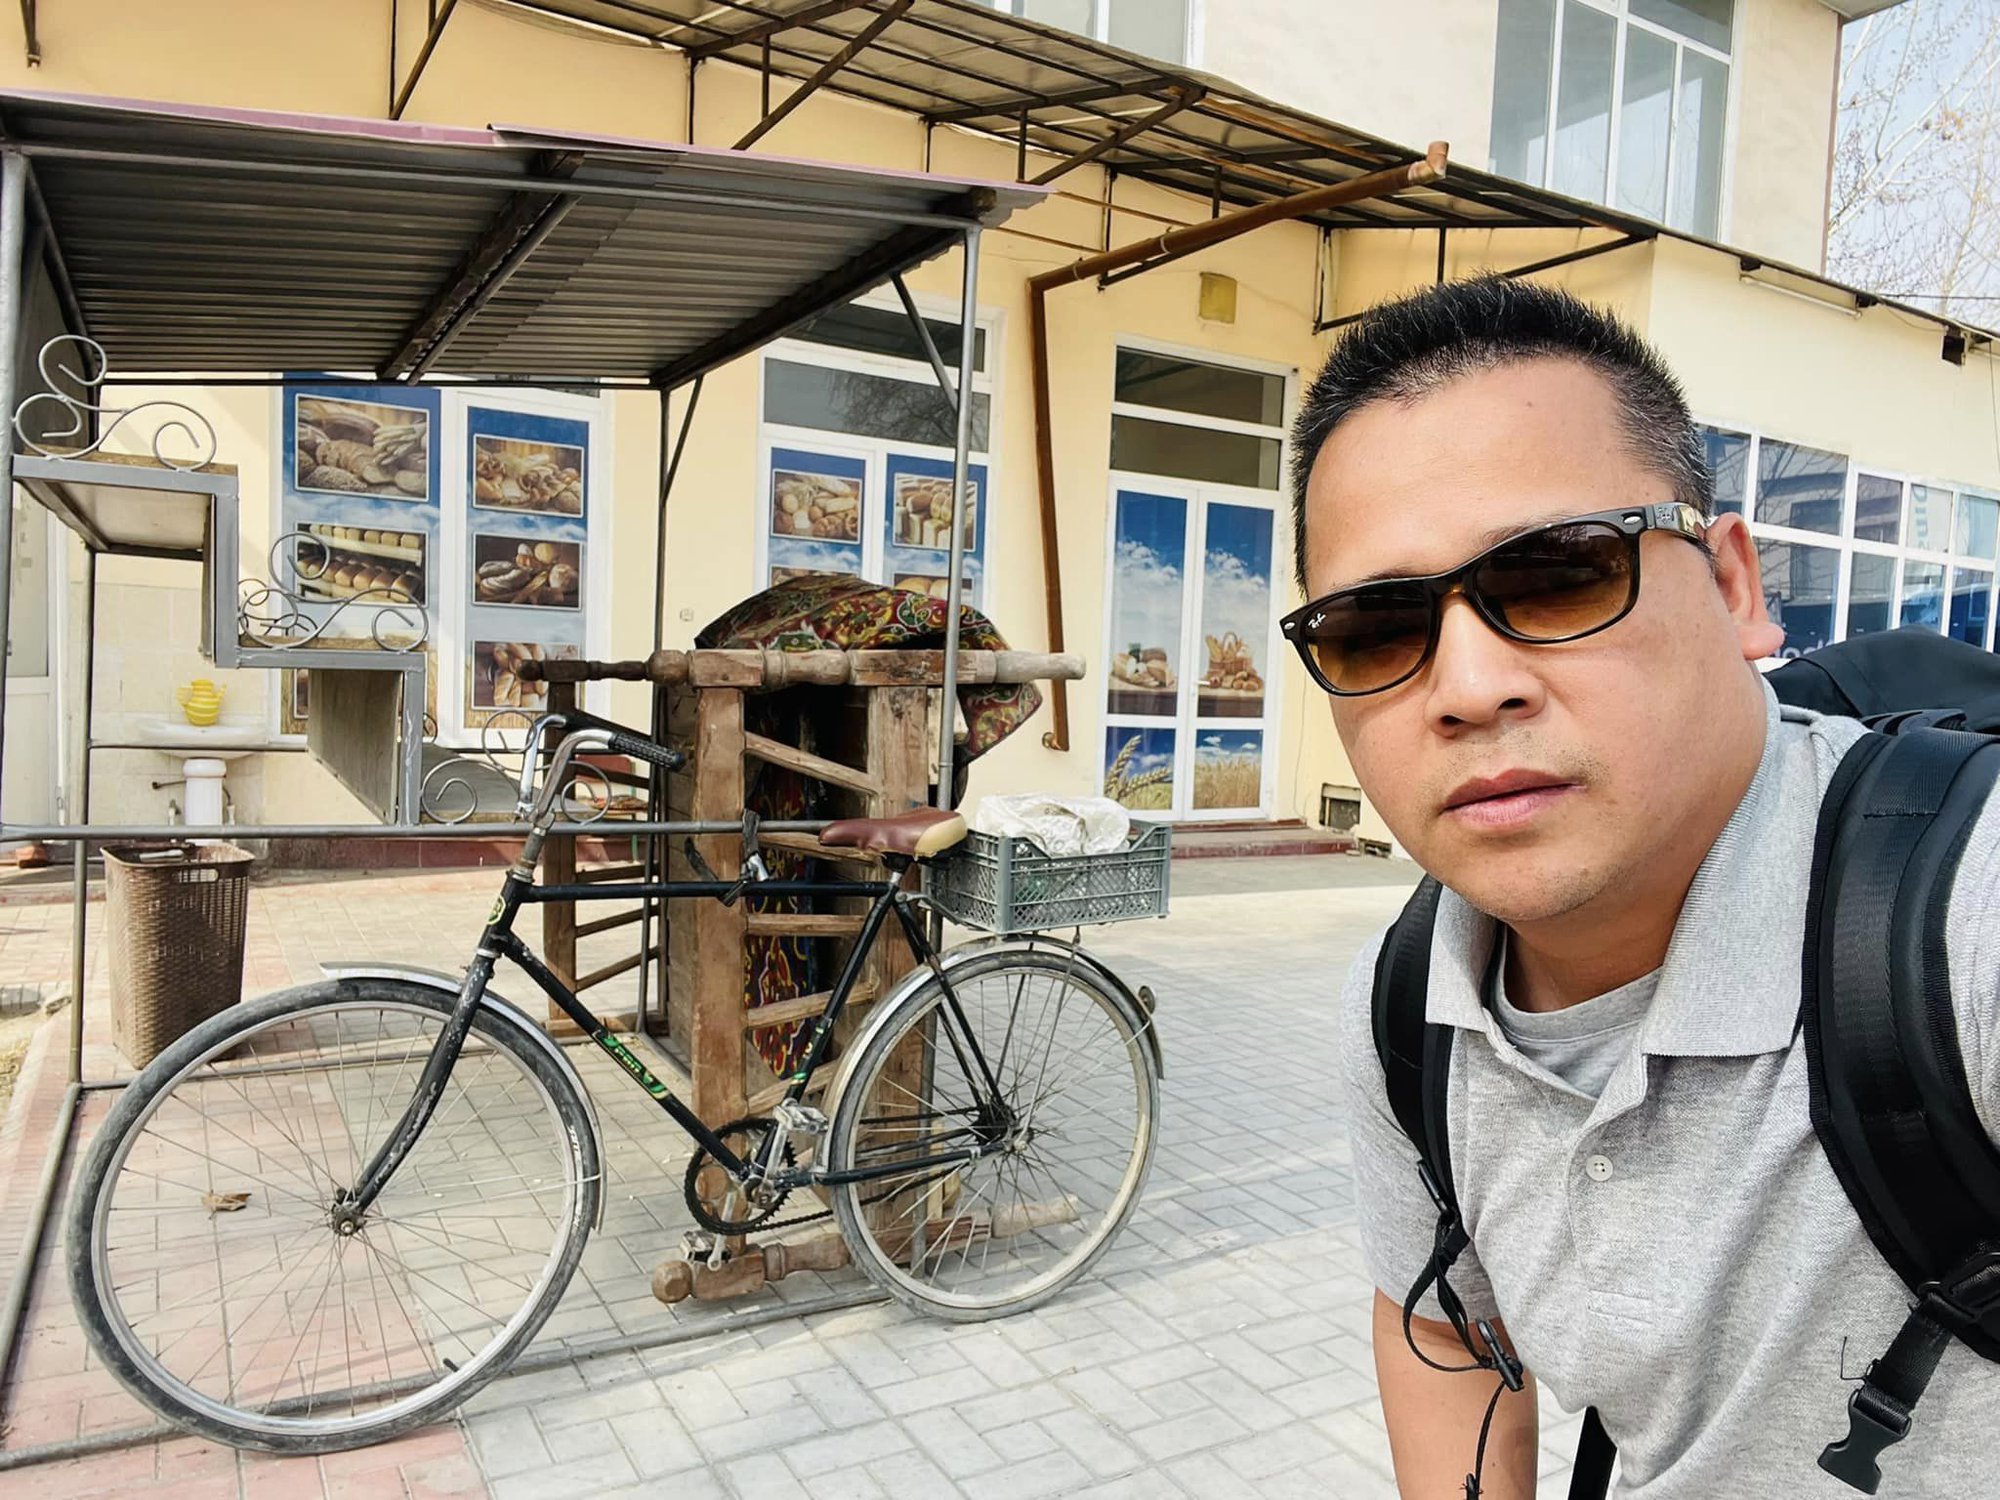 U20 Việt Nam, Fergana và... chiếc xe đạp gióng ngang - Ảnh 2.